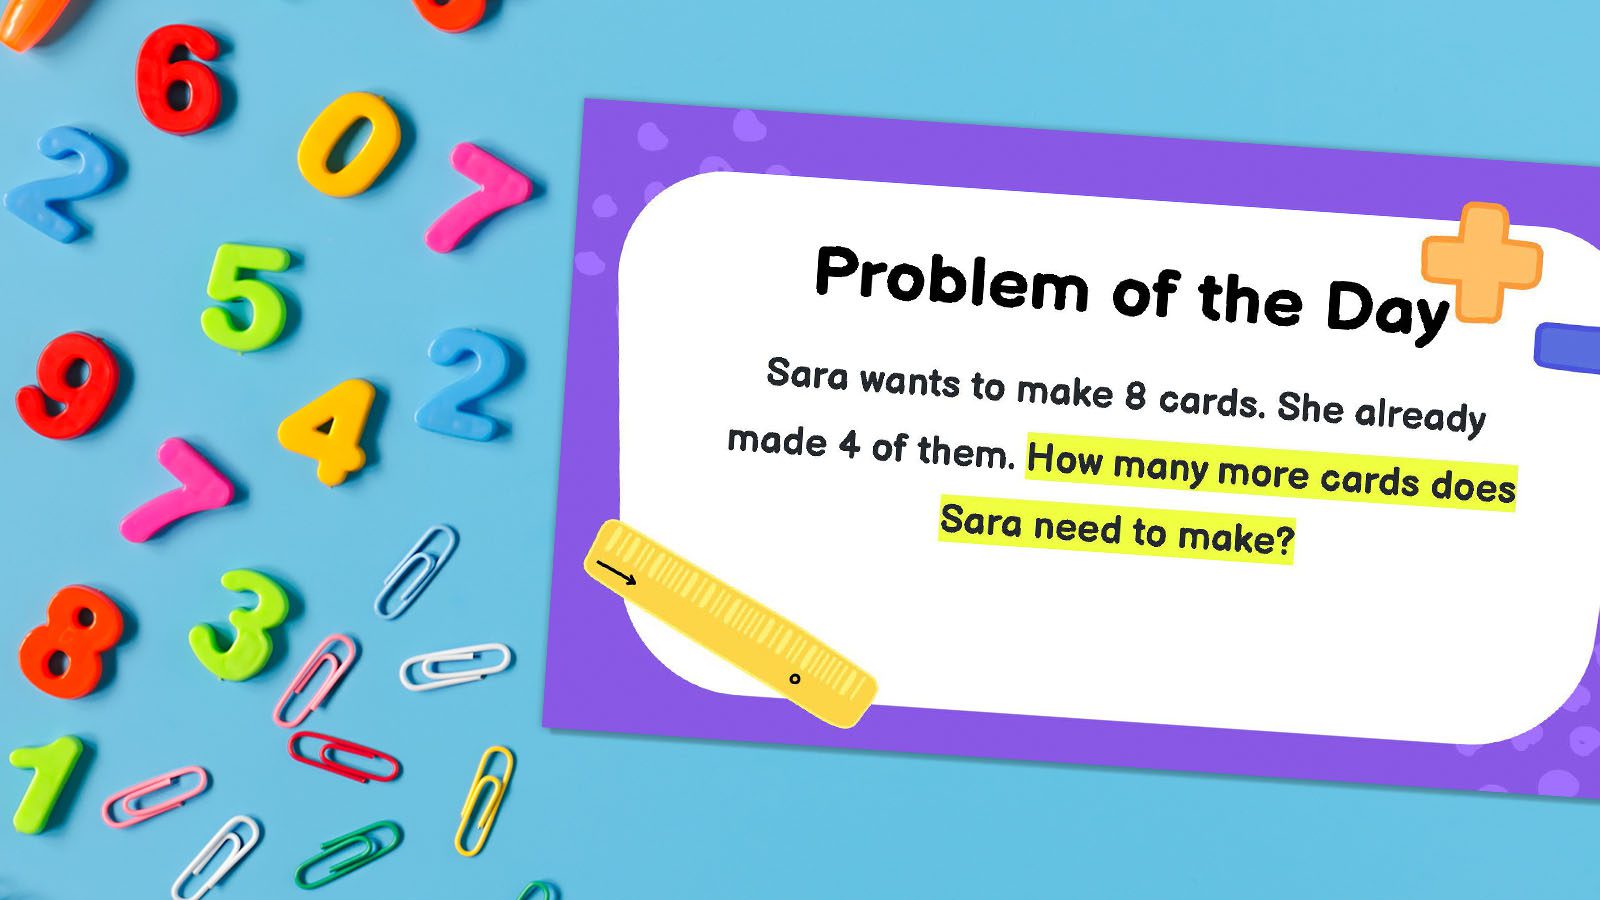  შეამოწმეთ ეს 50 საბავშვო ბაღის მათემატიკის დღის პრობლემა